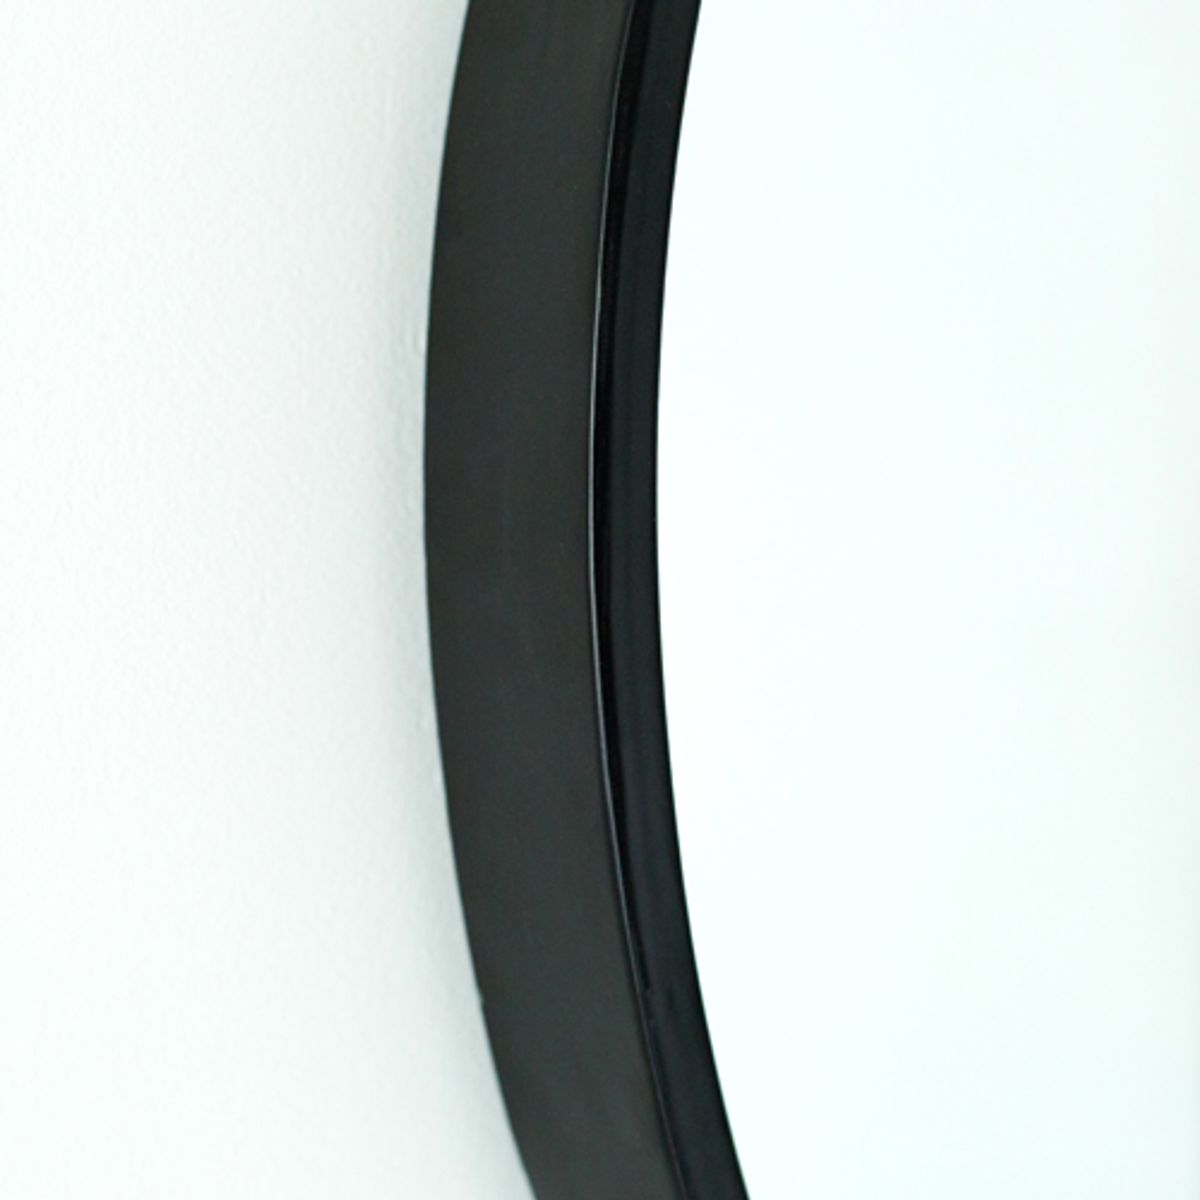 Miroir rond Levi (Diamètre: 80 cm, noir)